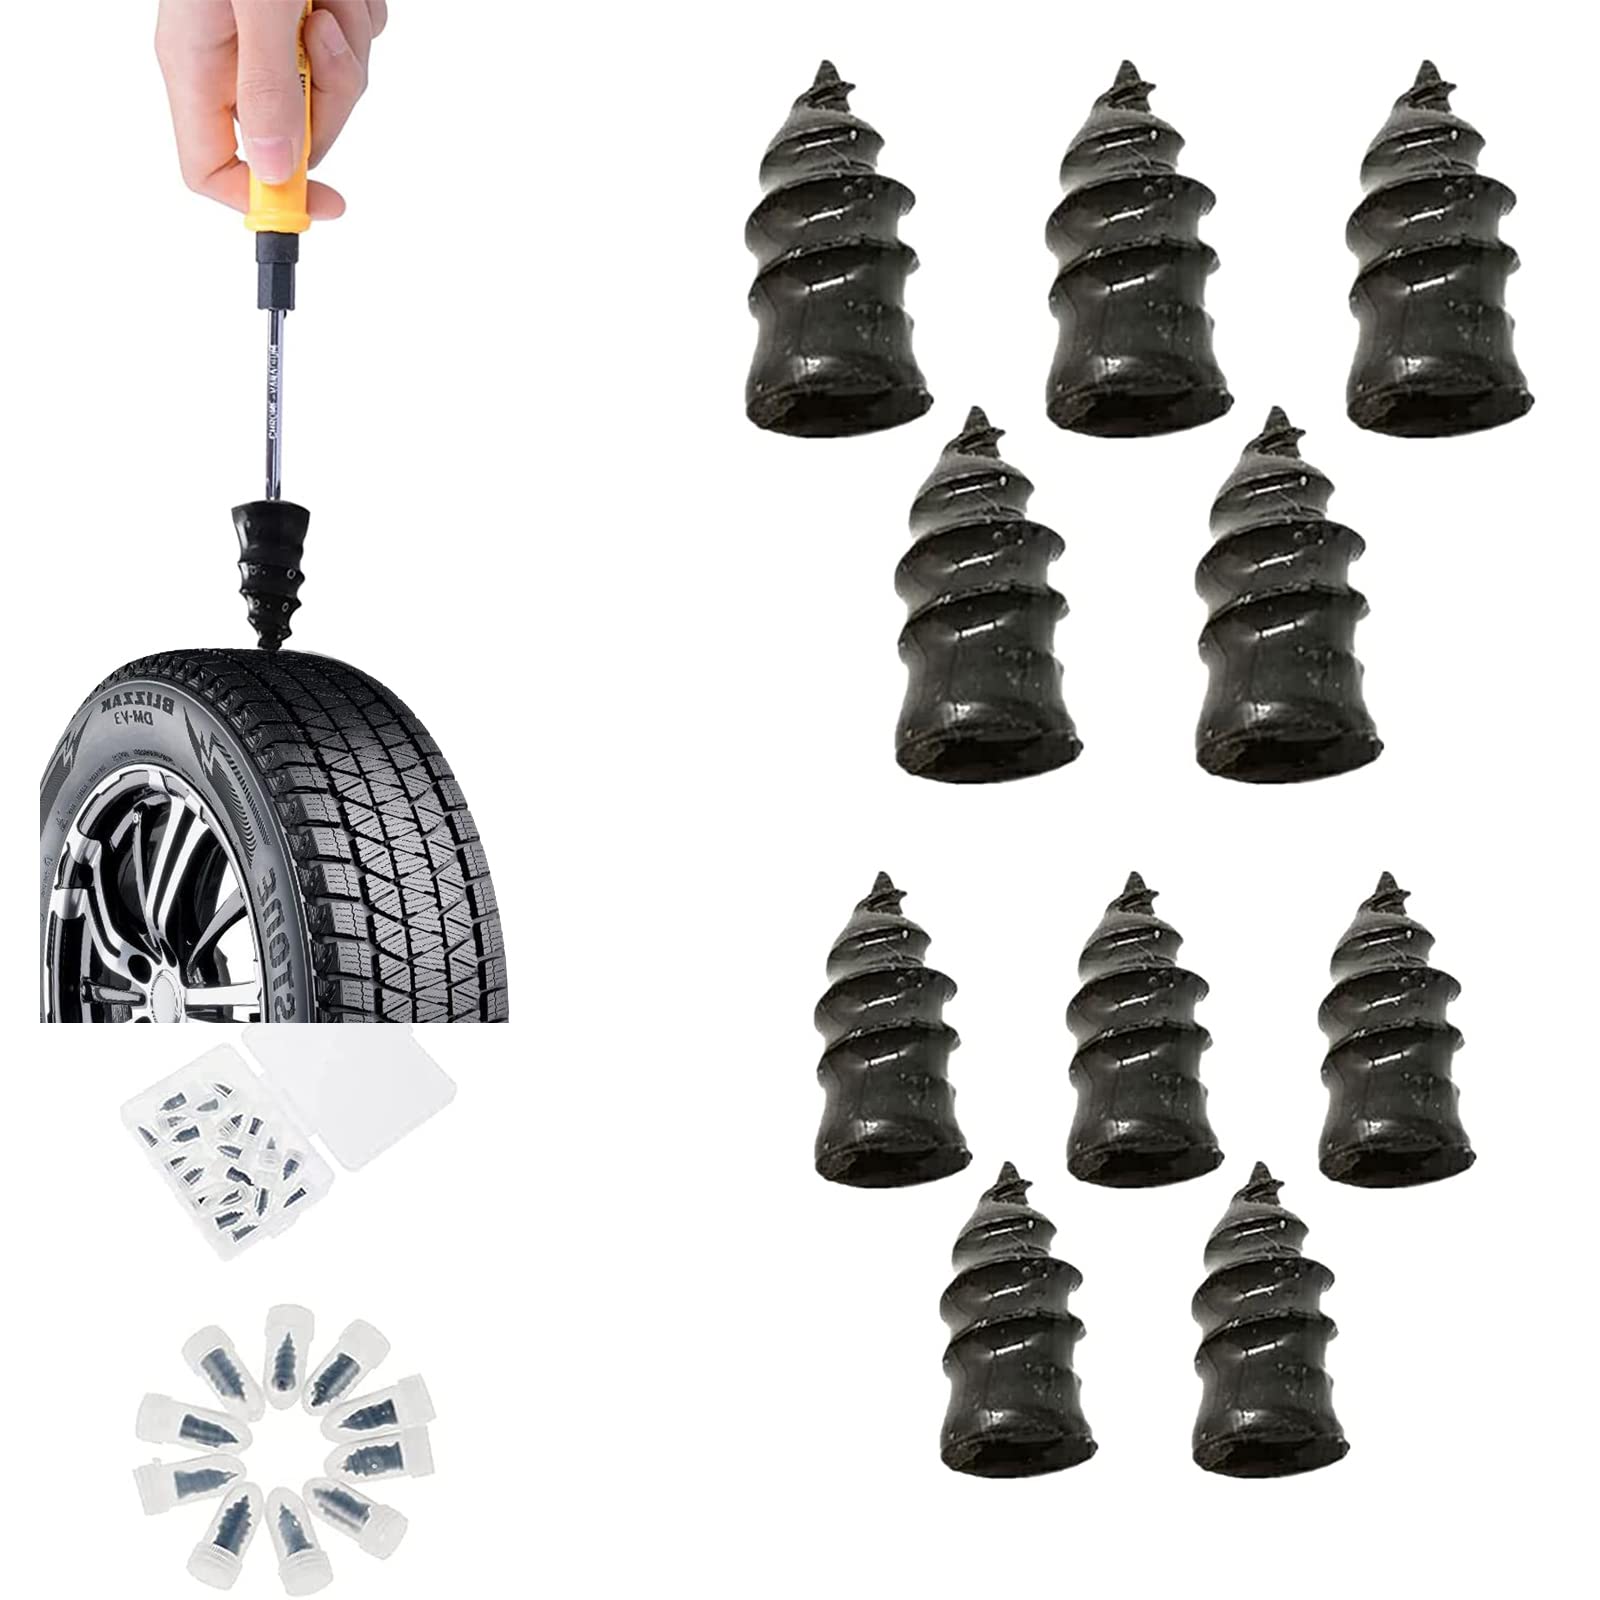 Reifenreparatur Gumminägel,Gummi Nagel Reifen Reparatur Nägel,Tubeless Reifenreparaturen Vakuum Reifen Reparatur Nagel Schlauchlose Reifen-Reparaturset,Schnelles Werkzeug Reifenreparaturnagel,10 PCS von SEMINISMAR